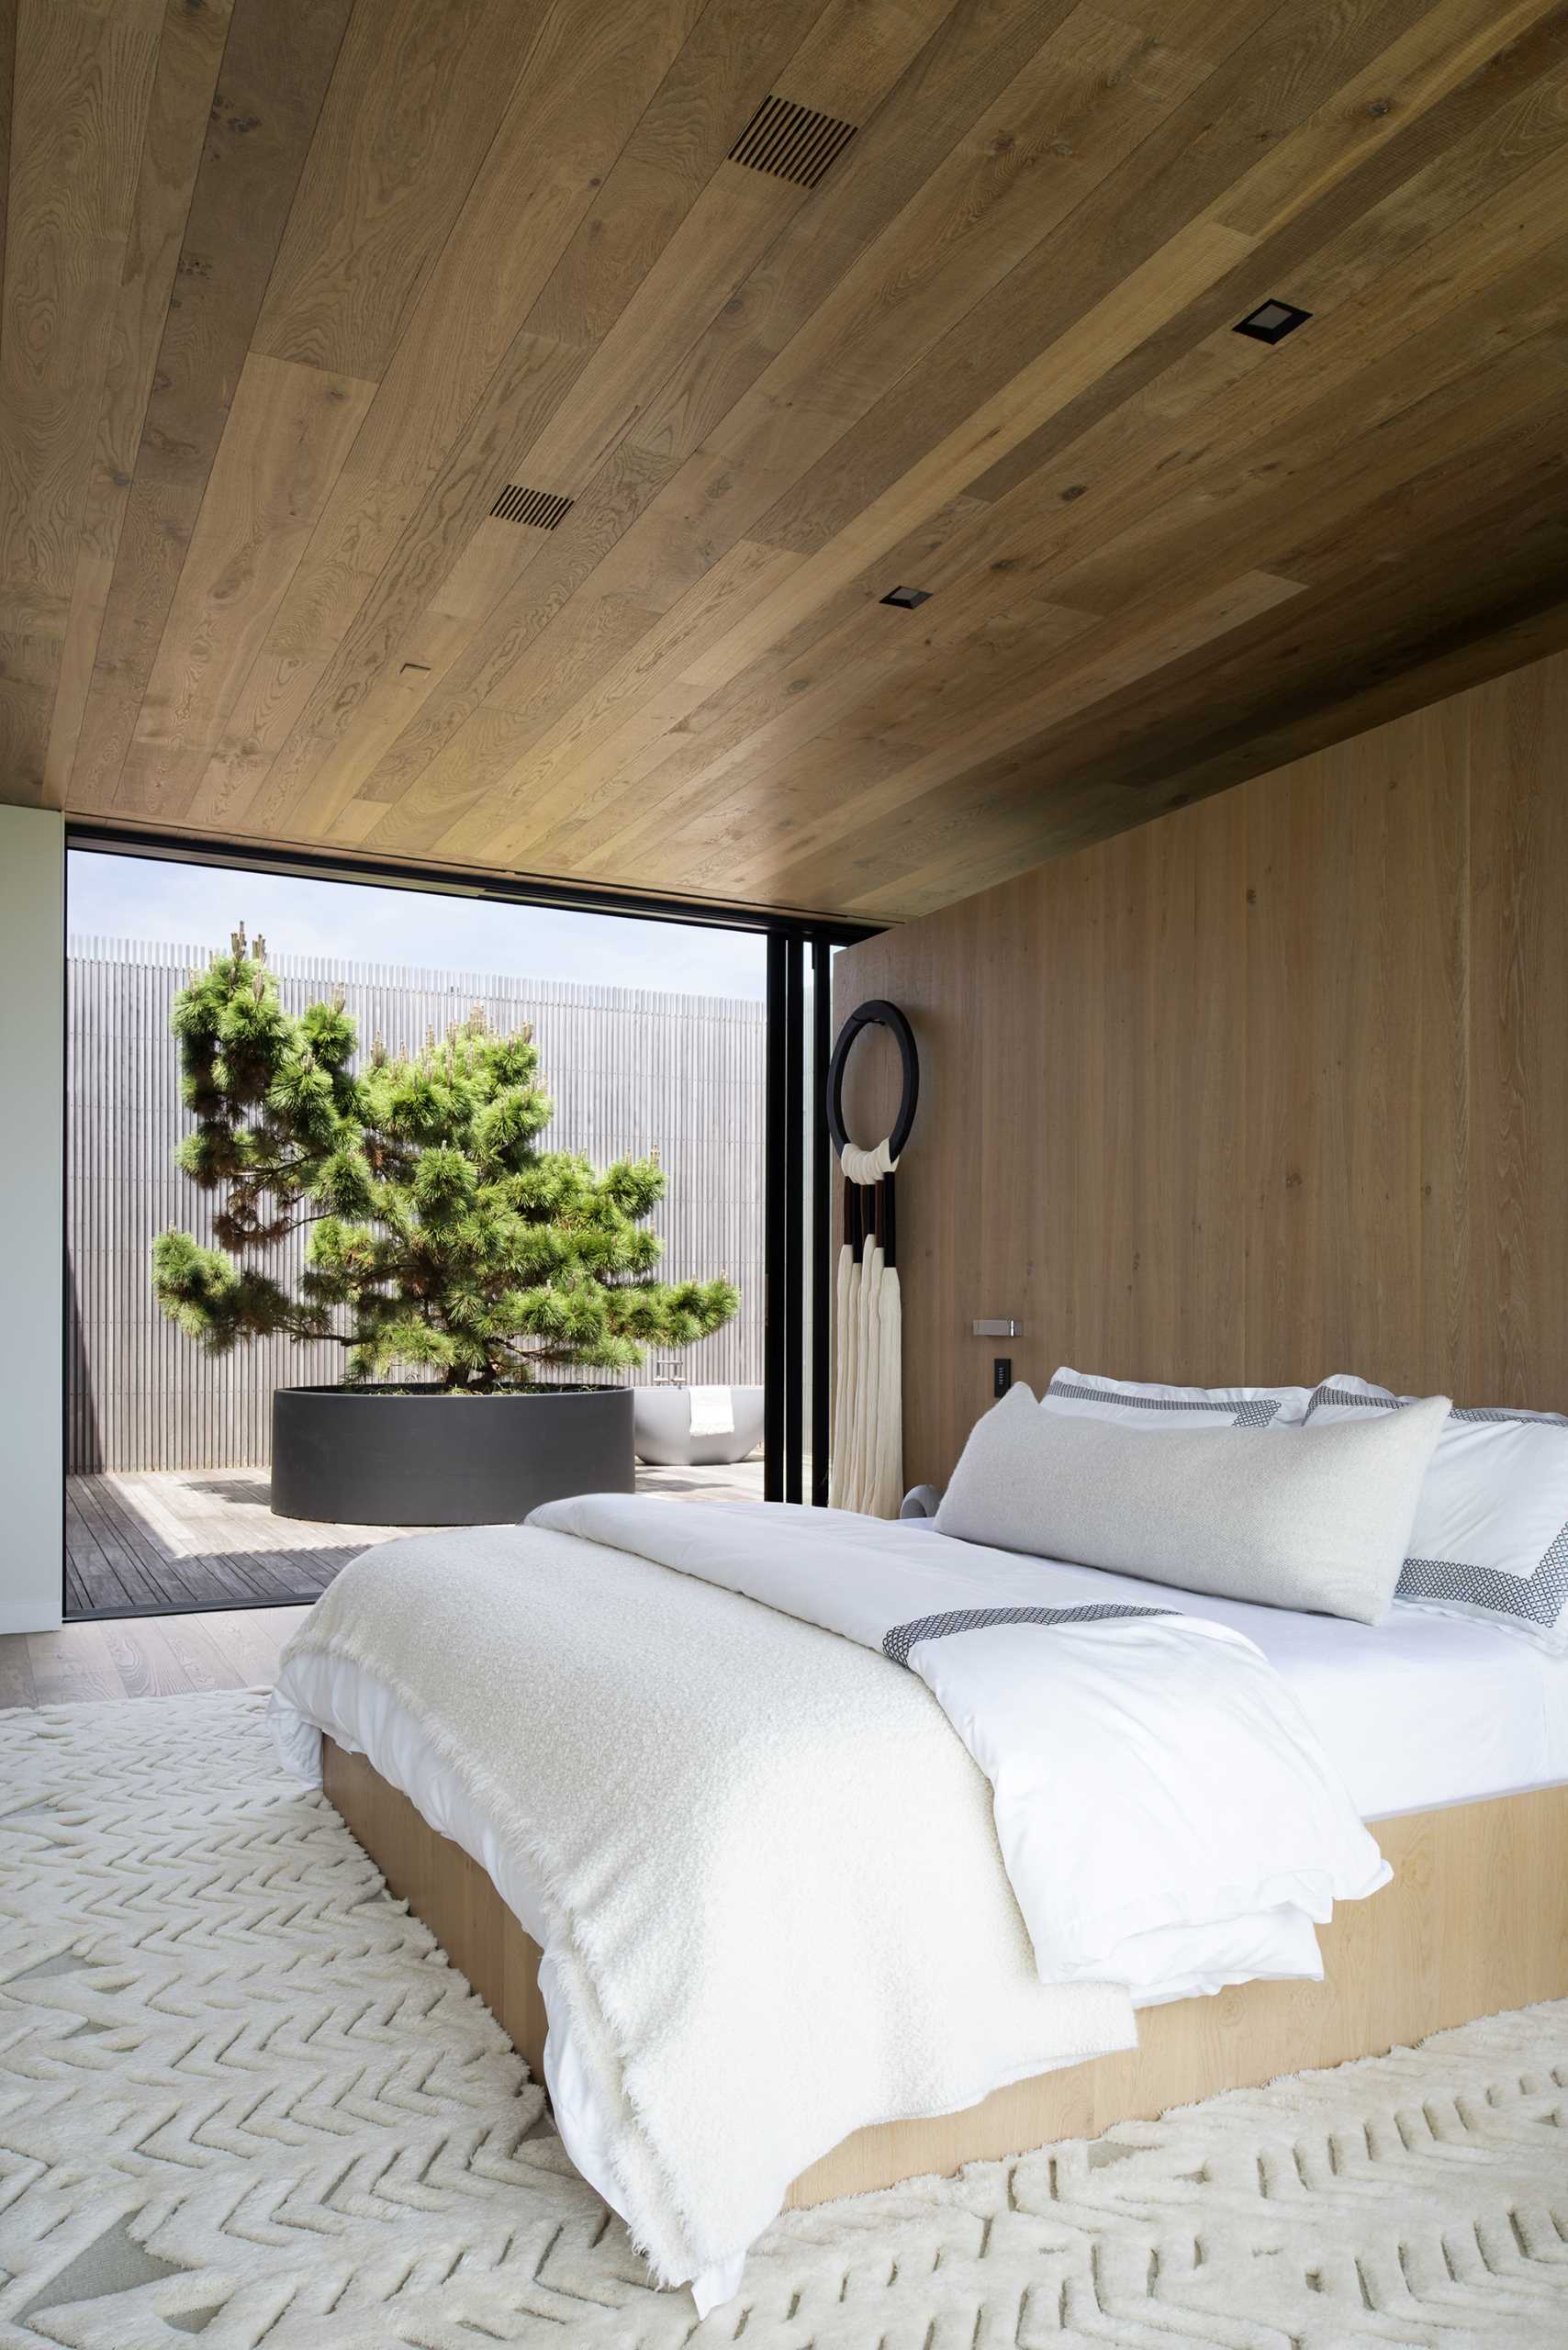 Un dormitor modern cu tavan din lemn și un perete cu accent din lemn.